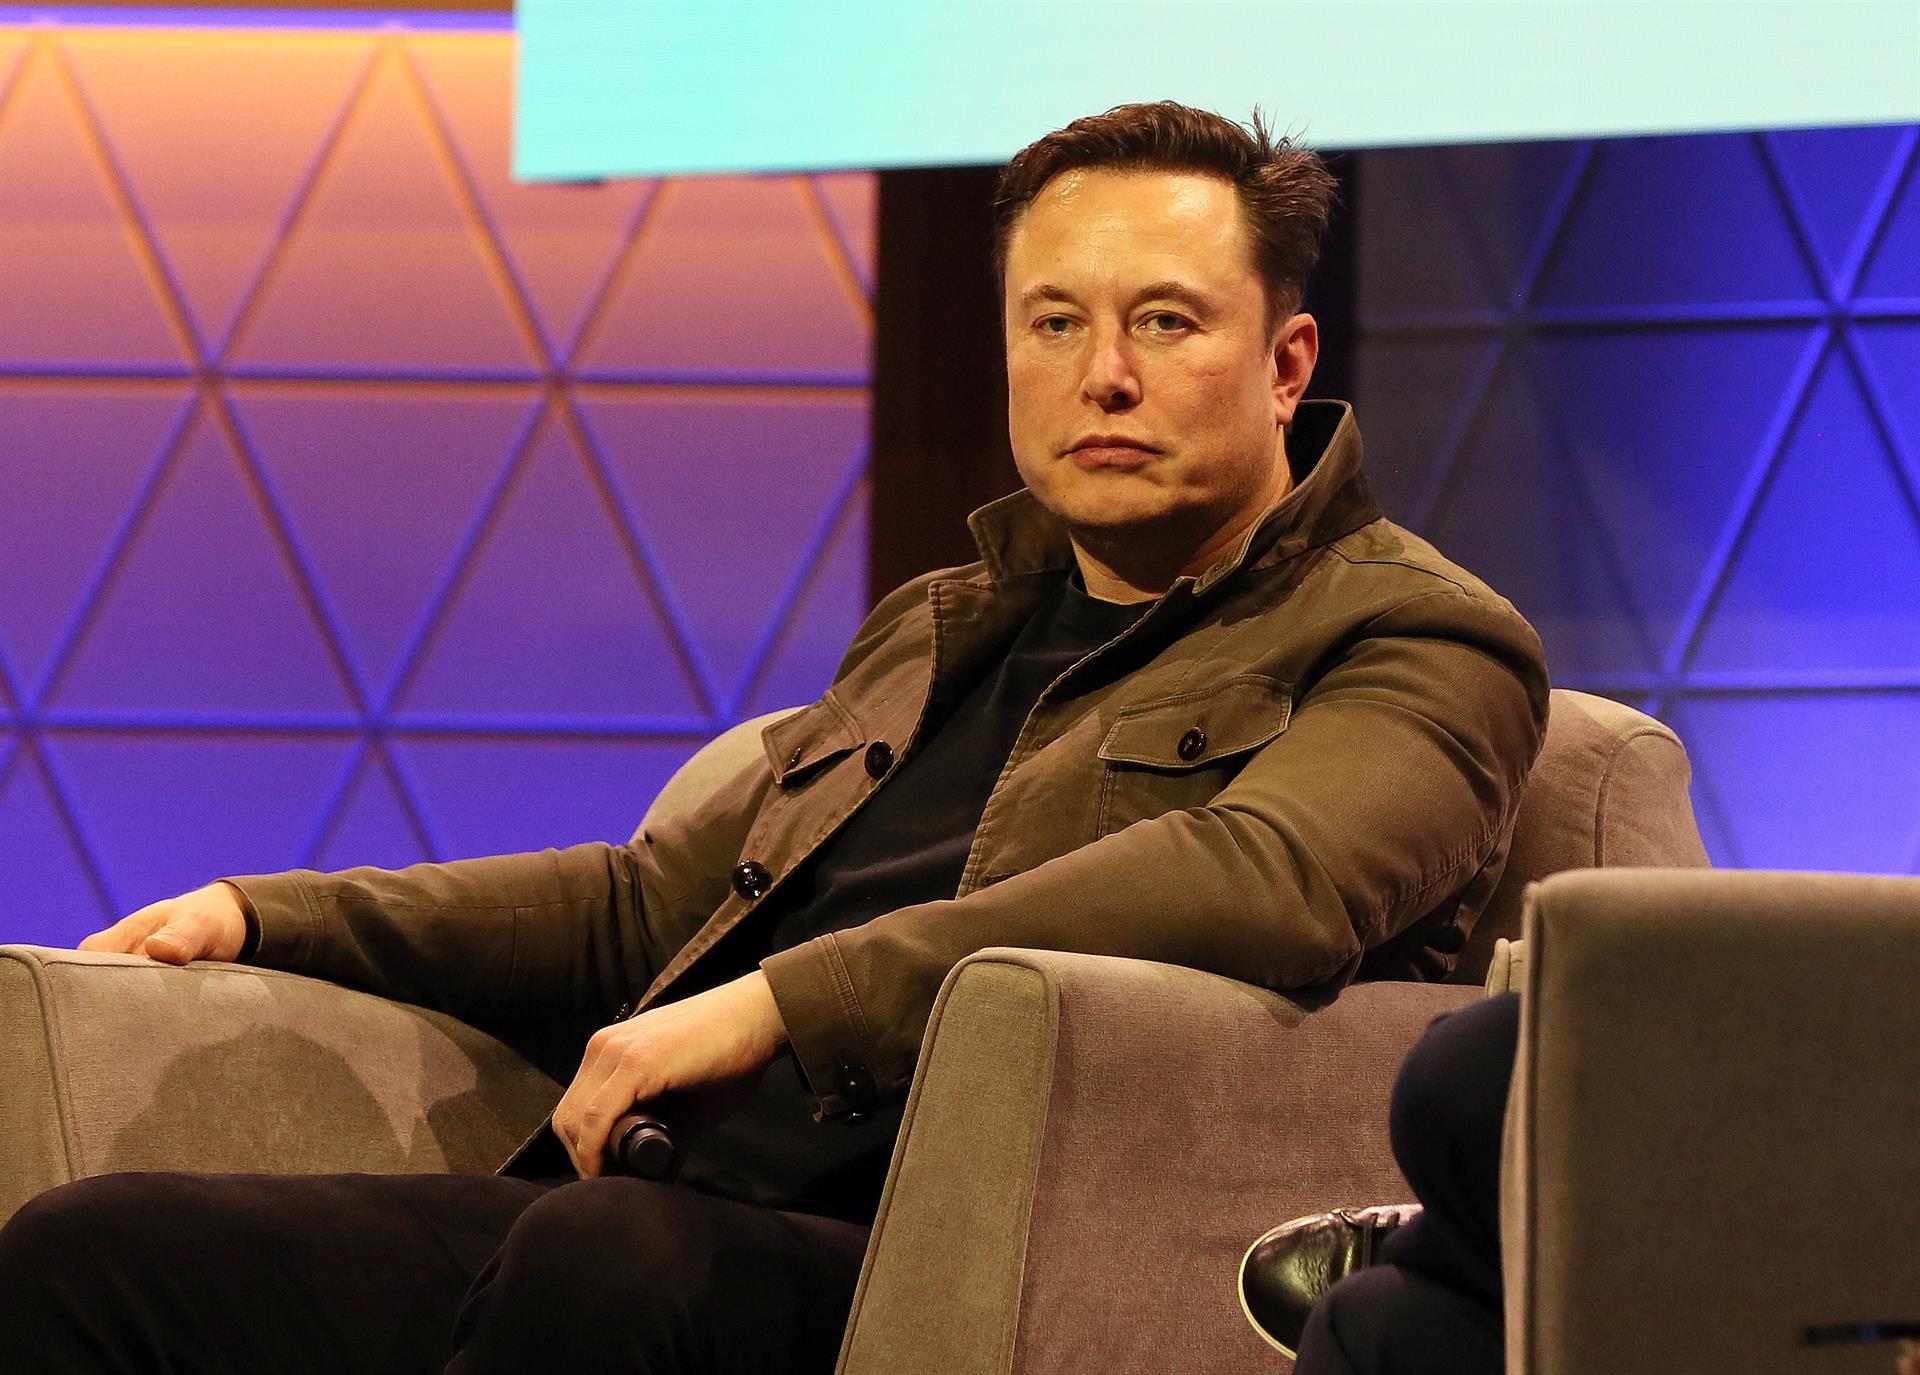 Fotografía de archivo fechada el 13 de junio de 2019 del empresario sudafricano Elon Musk en la conferencia 